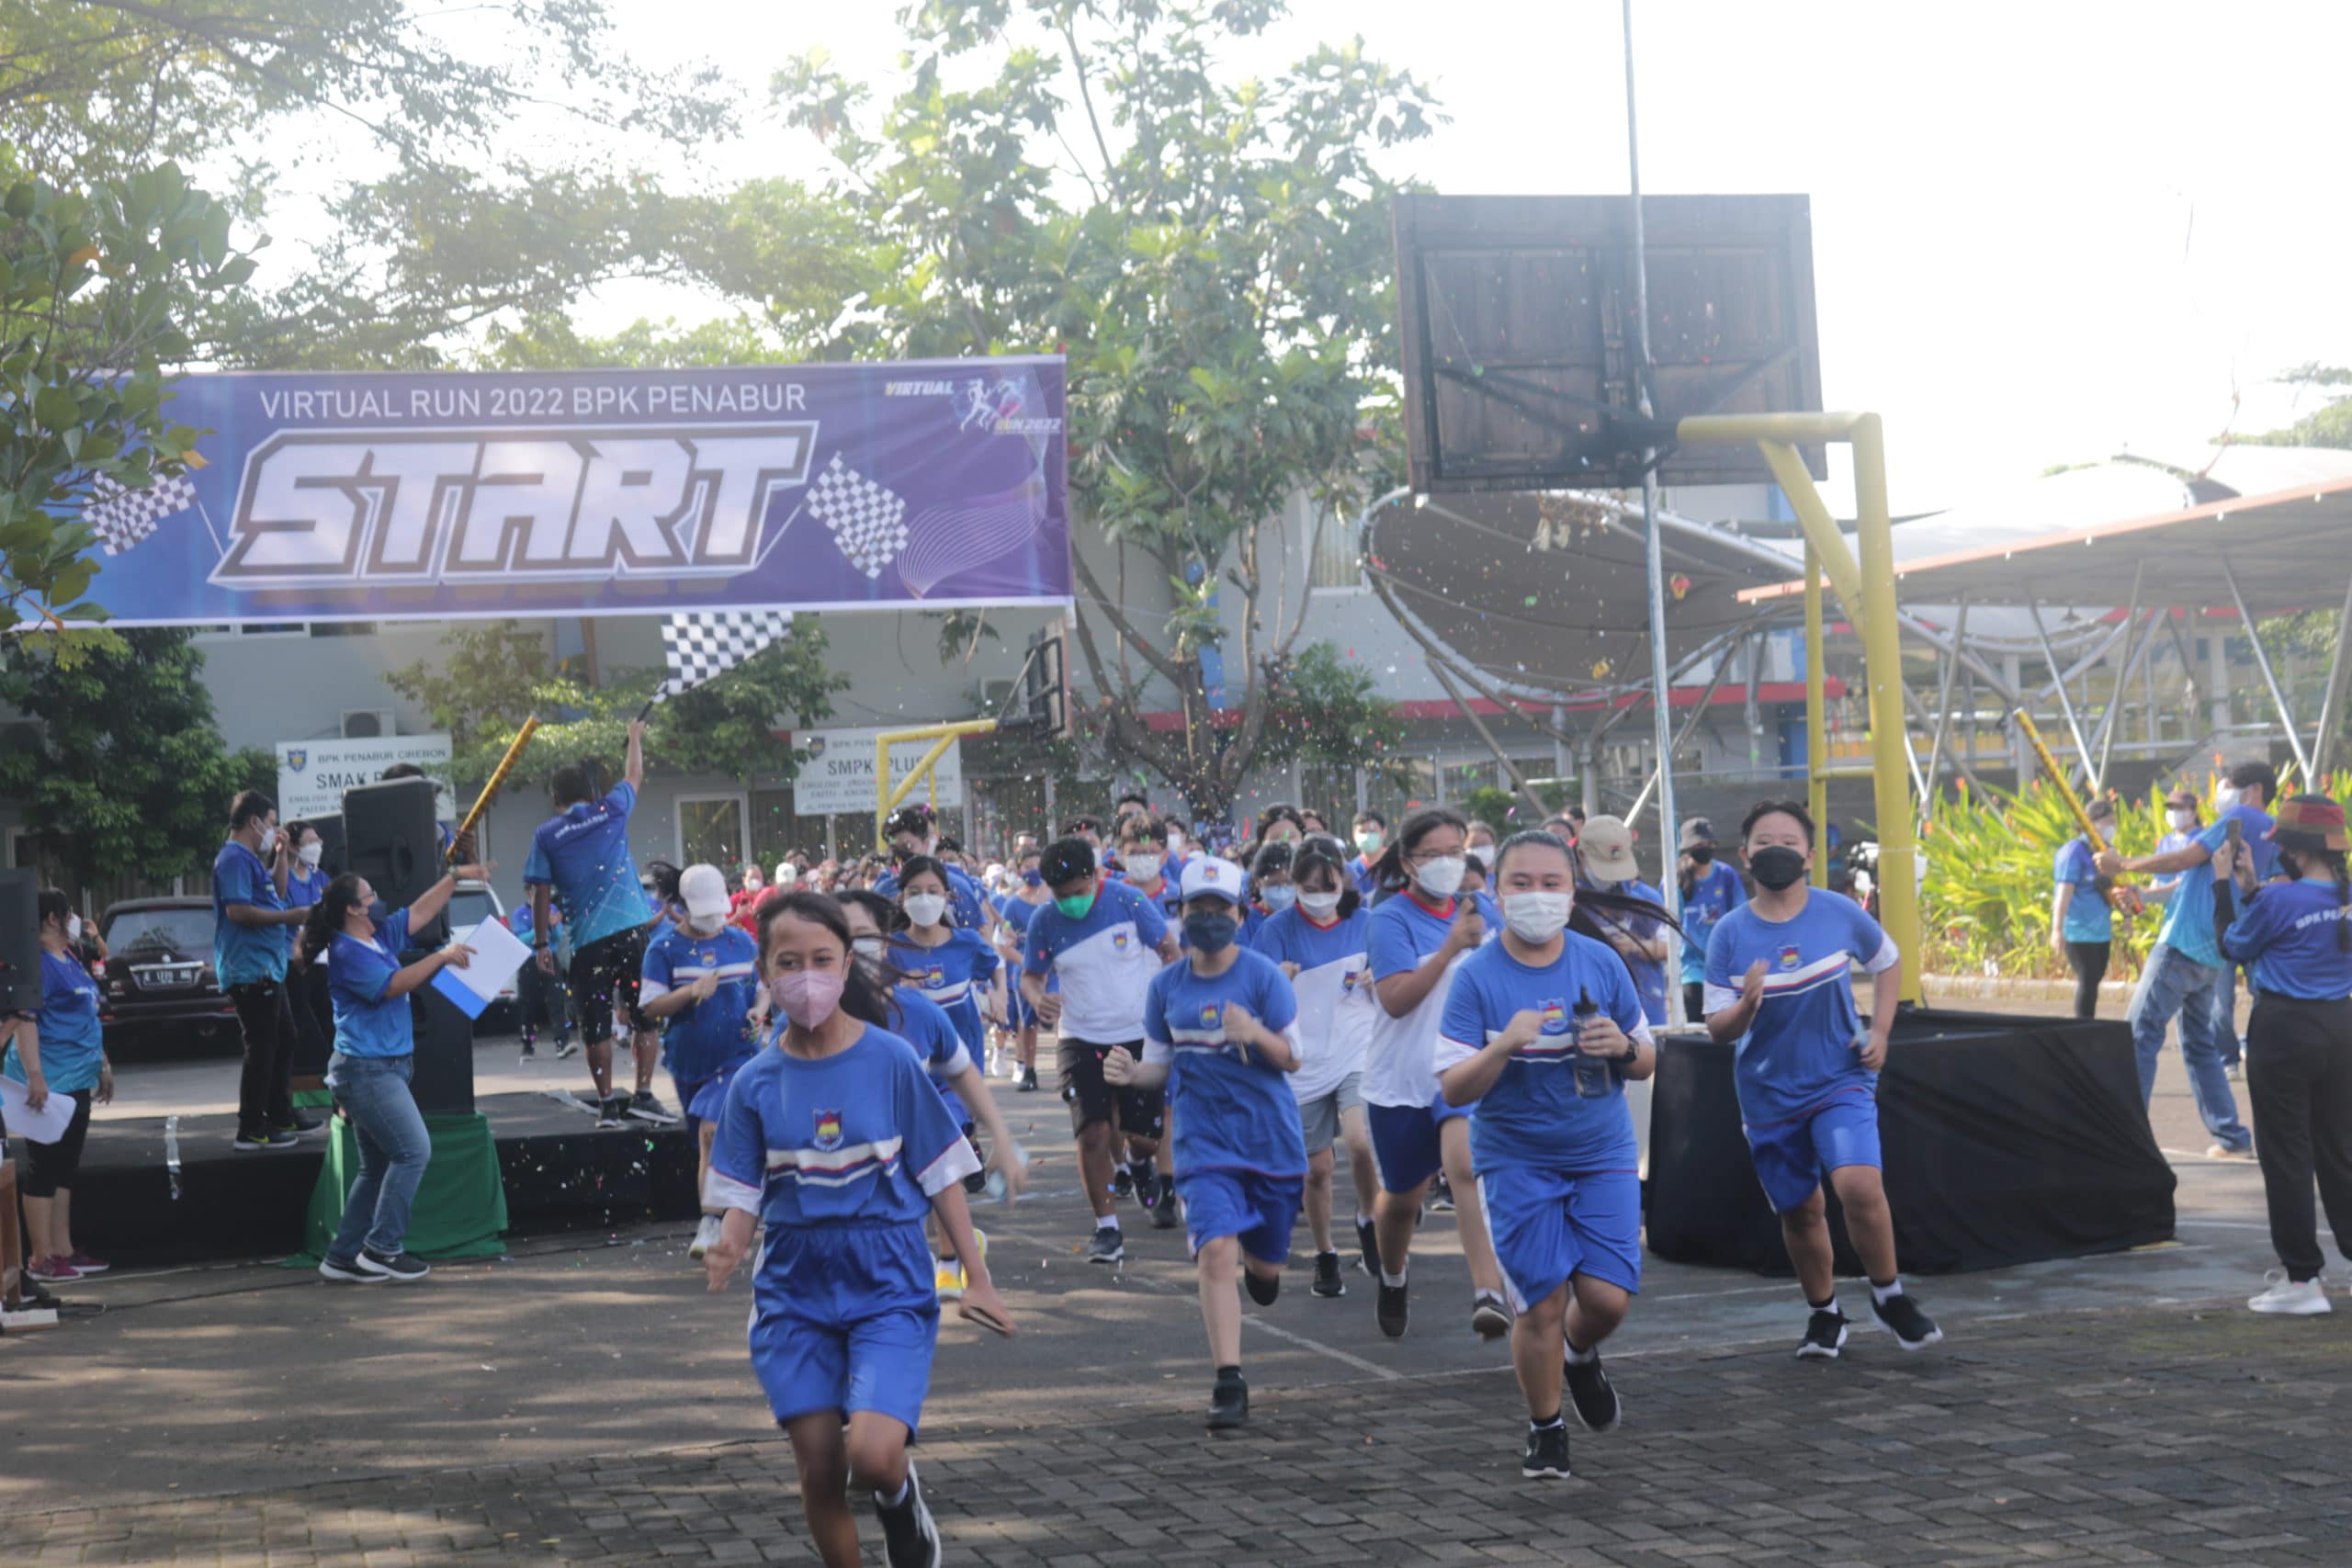 Virtual Run BPK Penabur Serentak di 15 Kota, Termasuk Cirebon